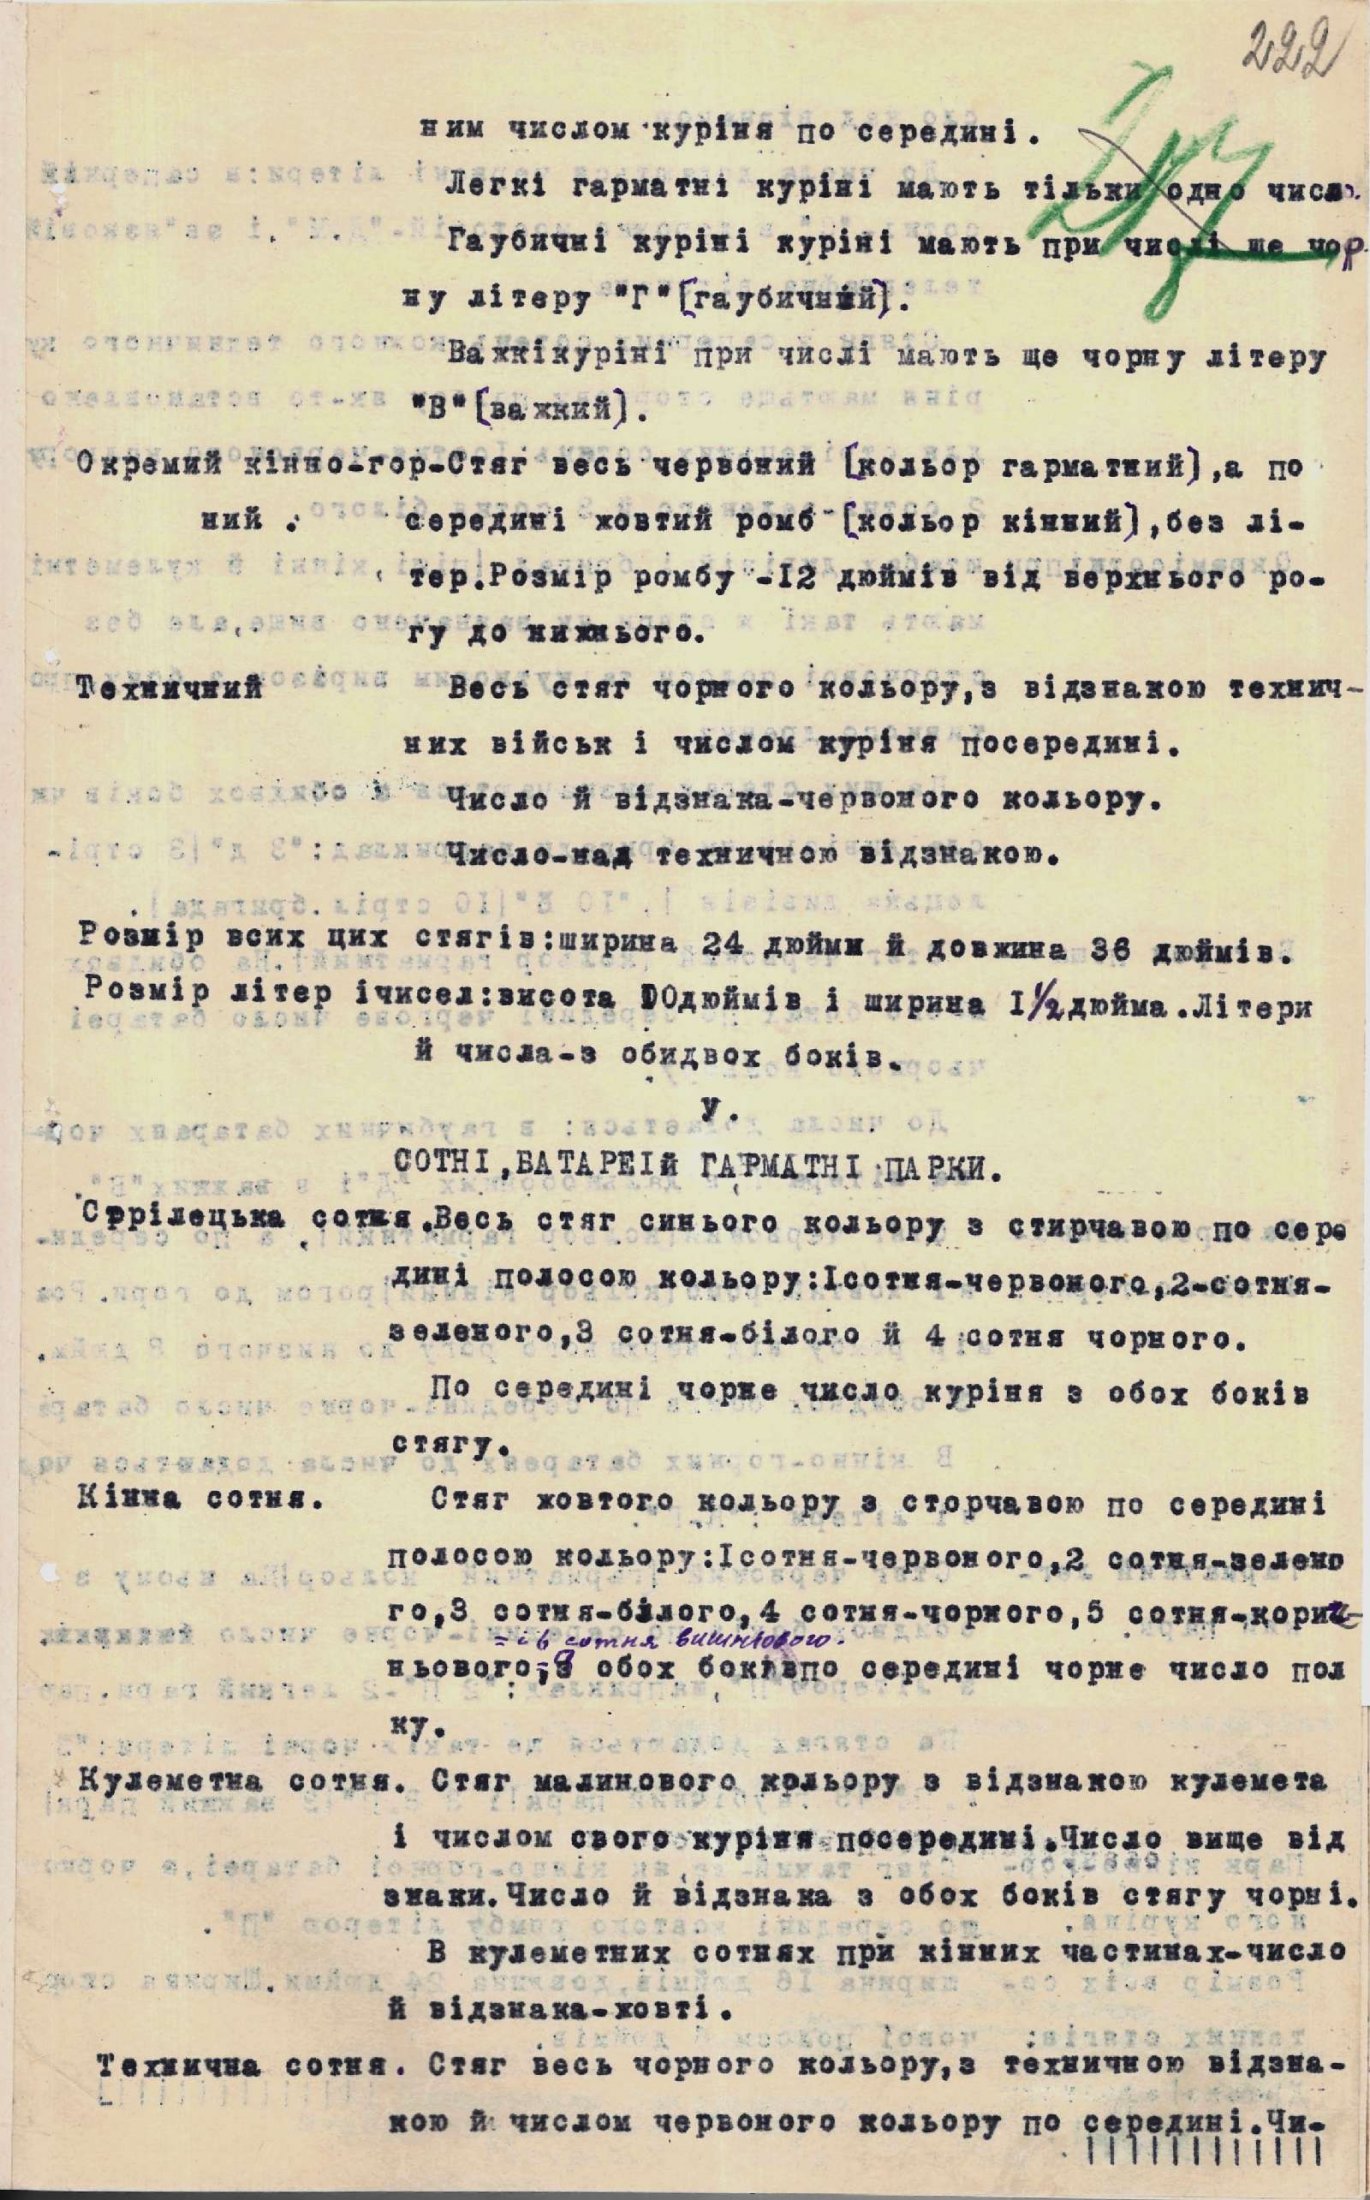 Опис стягів для штабів і частин Війська Української Народної Республіки, затверджений Головним Отаманом Симоном Петлюрою. 1 листопада 1921 р.